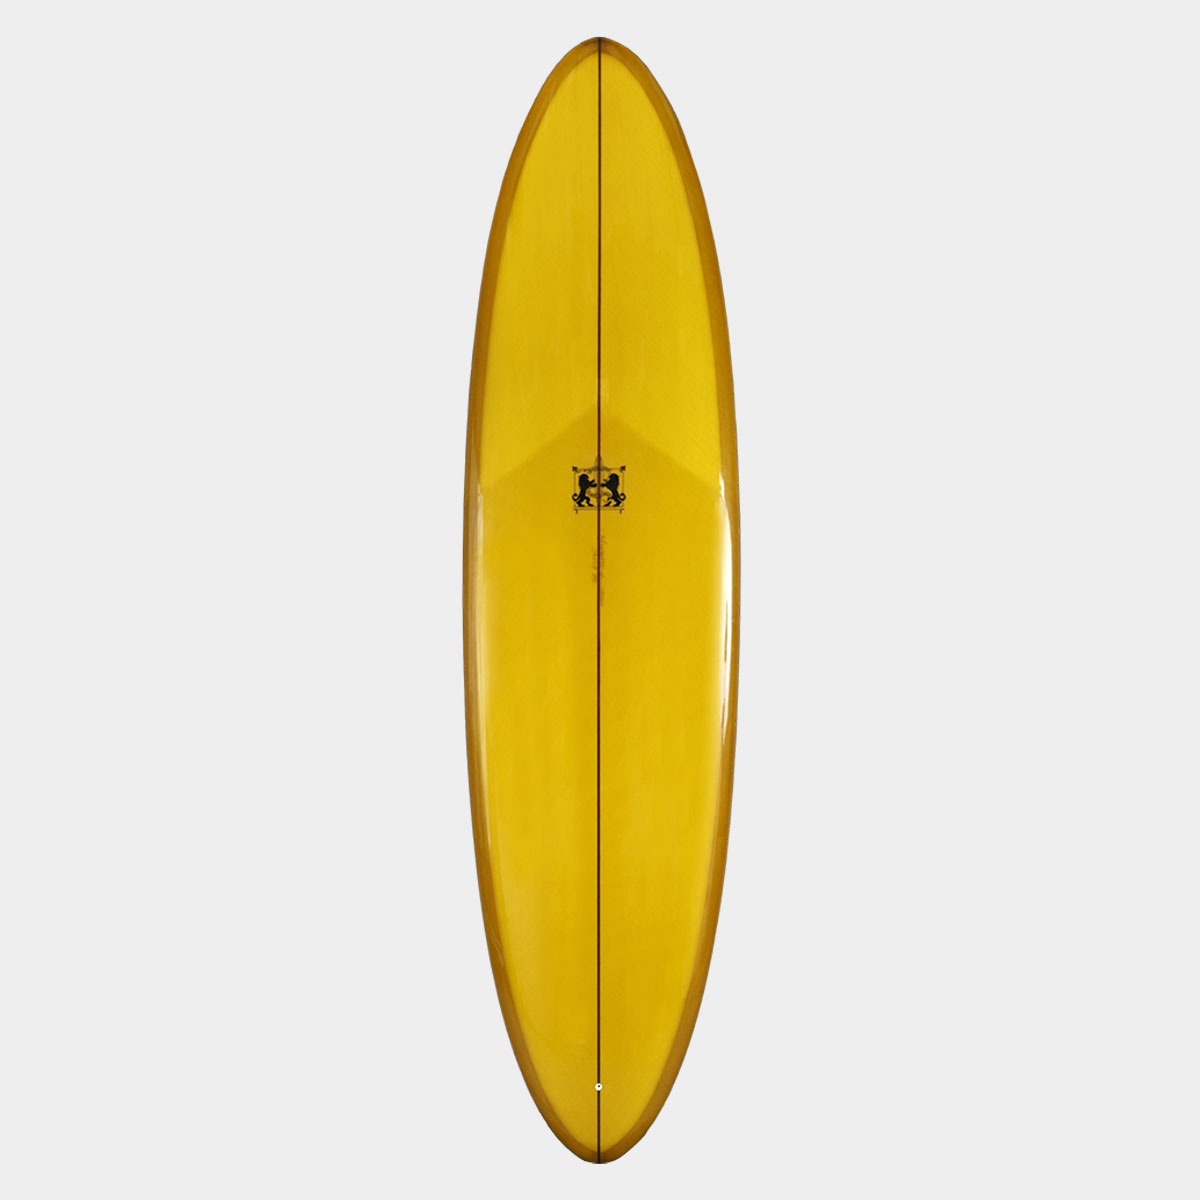 ラリーメイビル サーフボード エッグステイシー 7.6 ミッド サーフィン ミッドレングス シングルスタビ surfboards LARRY MABILE EGGSTACY 7'6 YELLOW イエロー【jk2309】